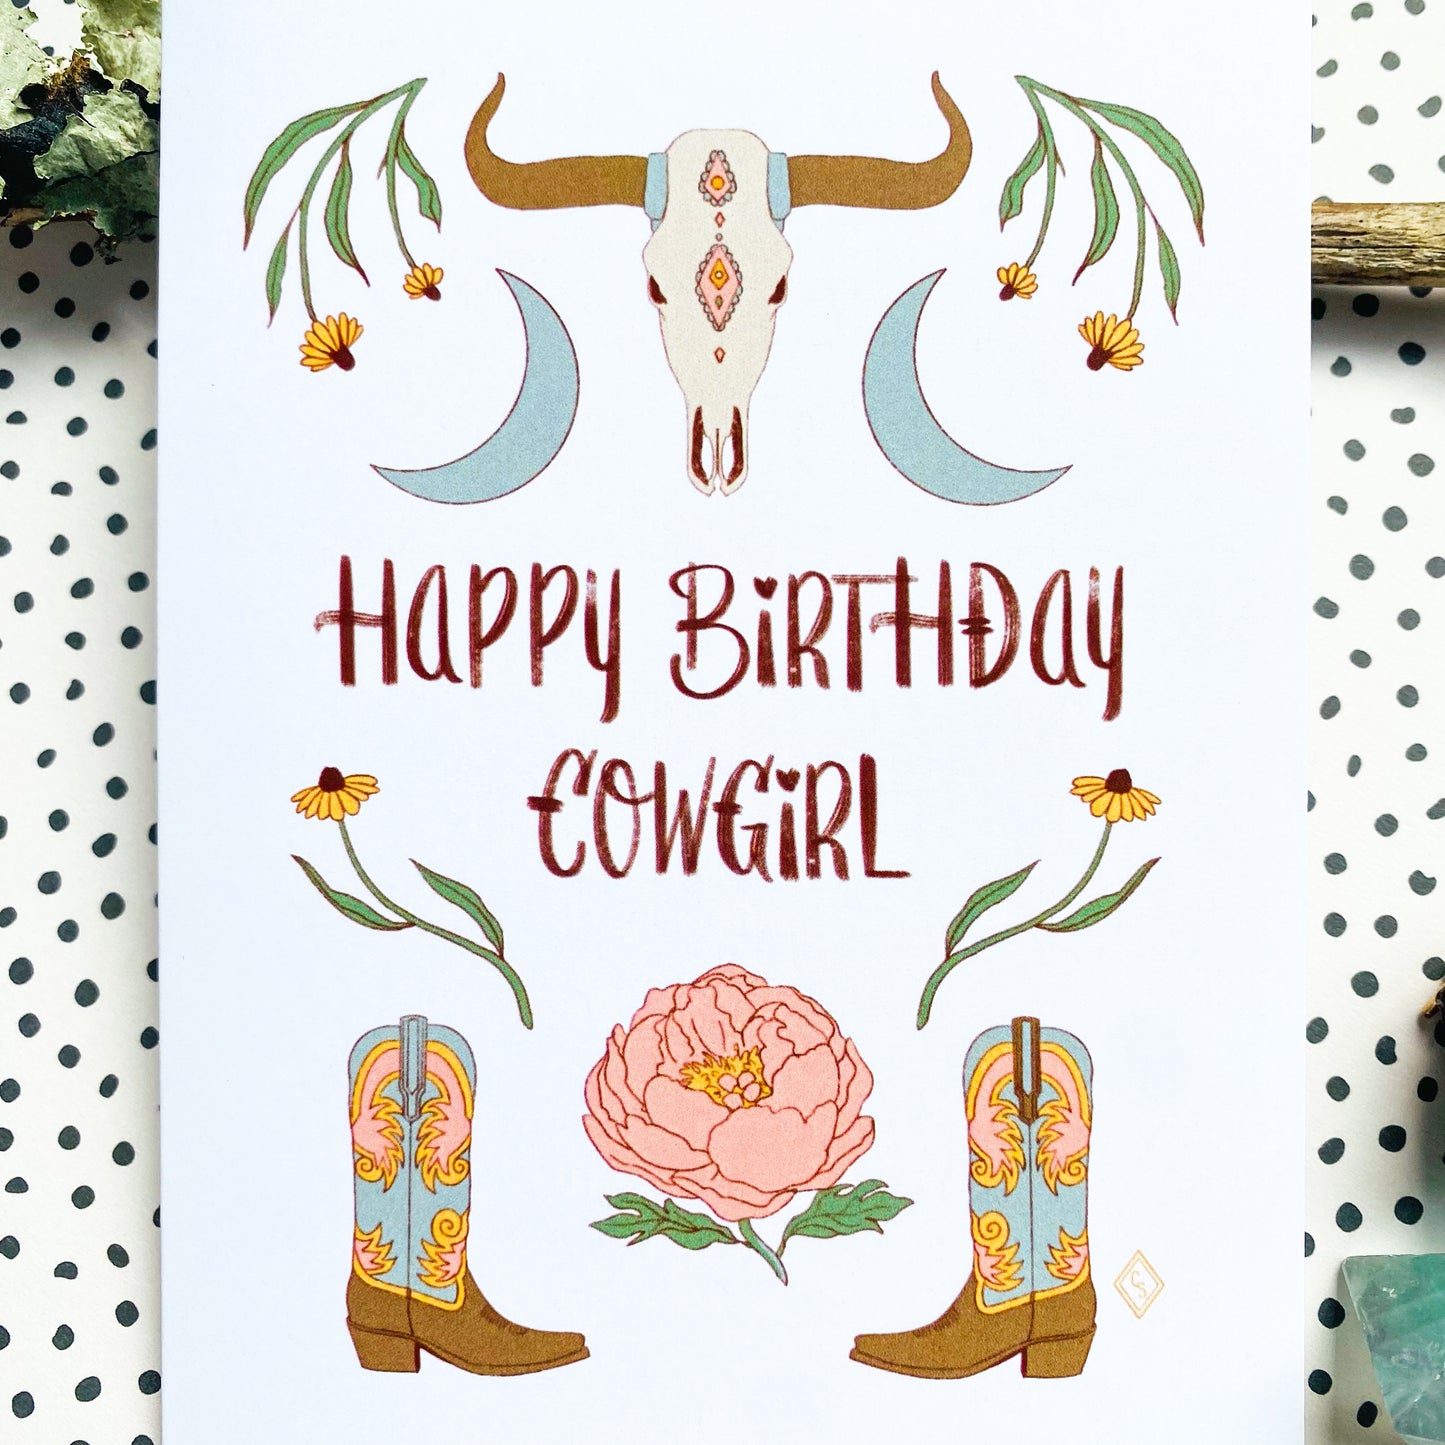 Happy Birthday Cowgirl - Greeting Card